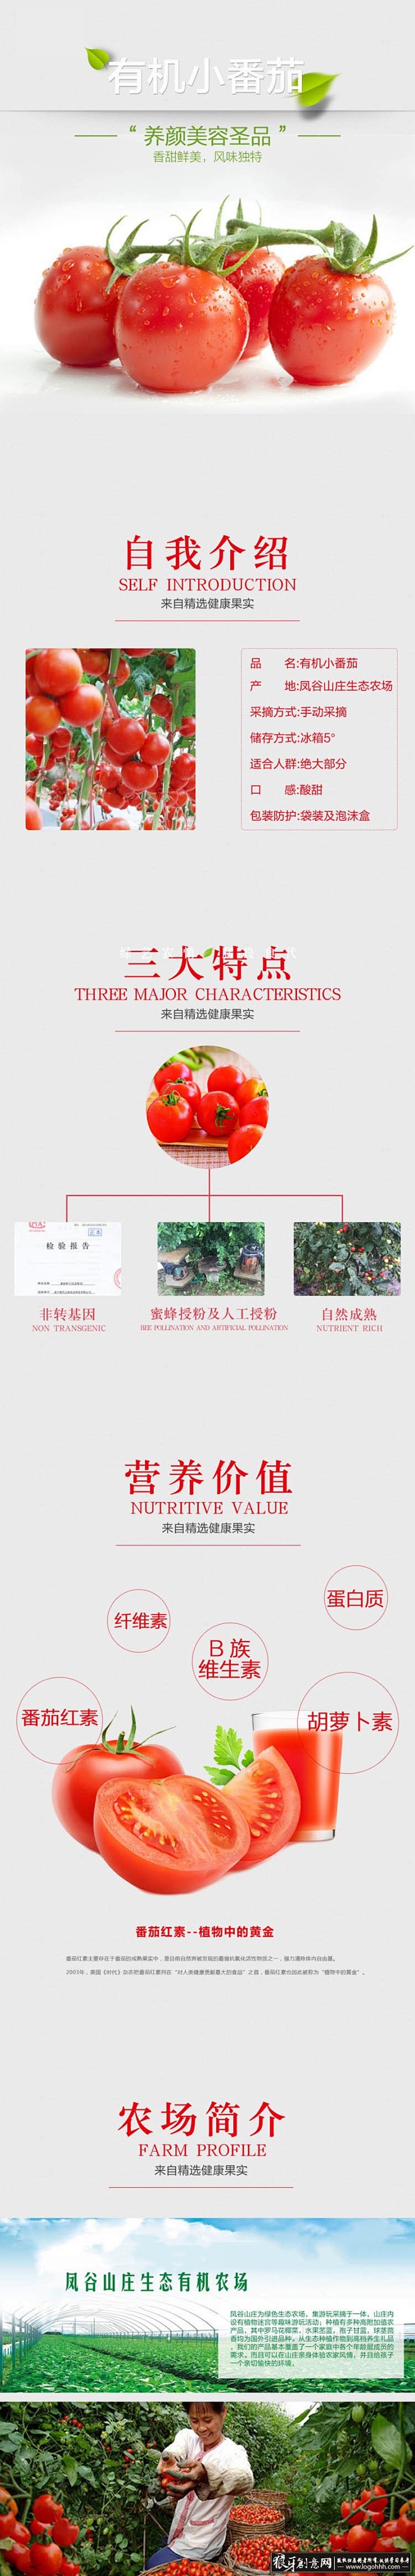 淘宝/电商 小番茄详情页设计PSD 蔬菜...